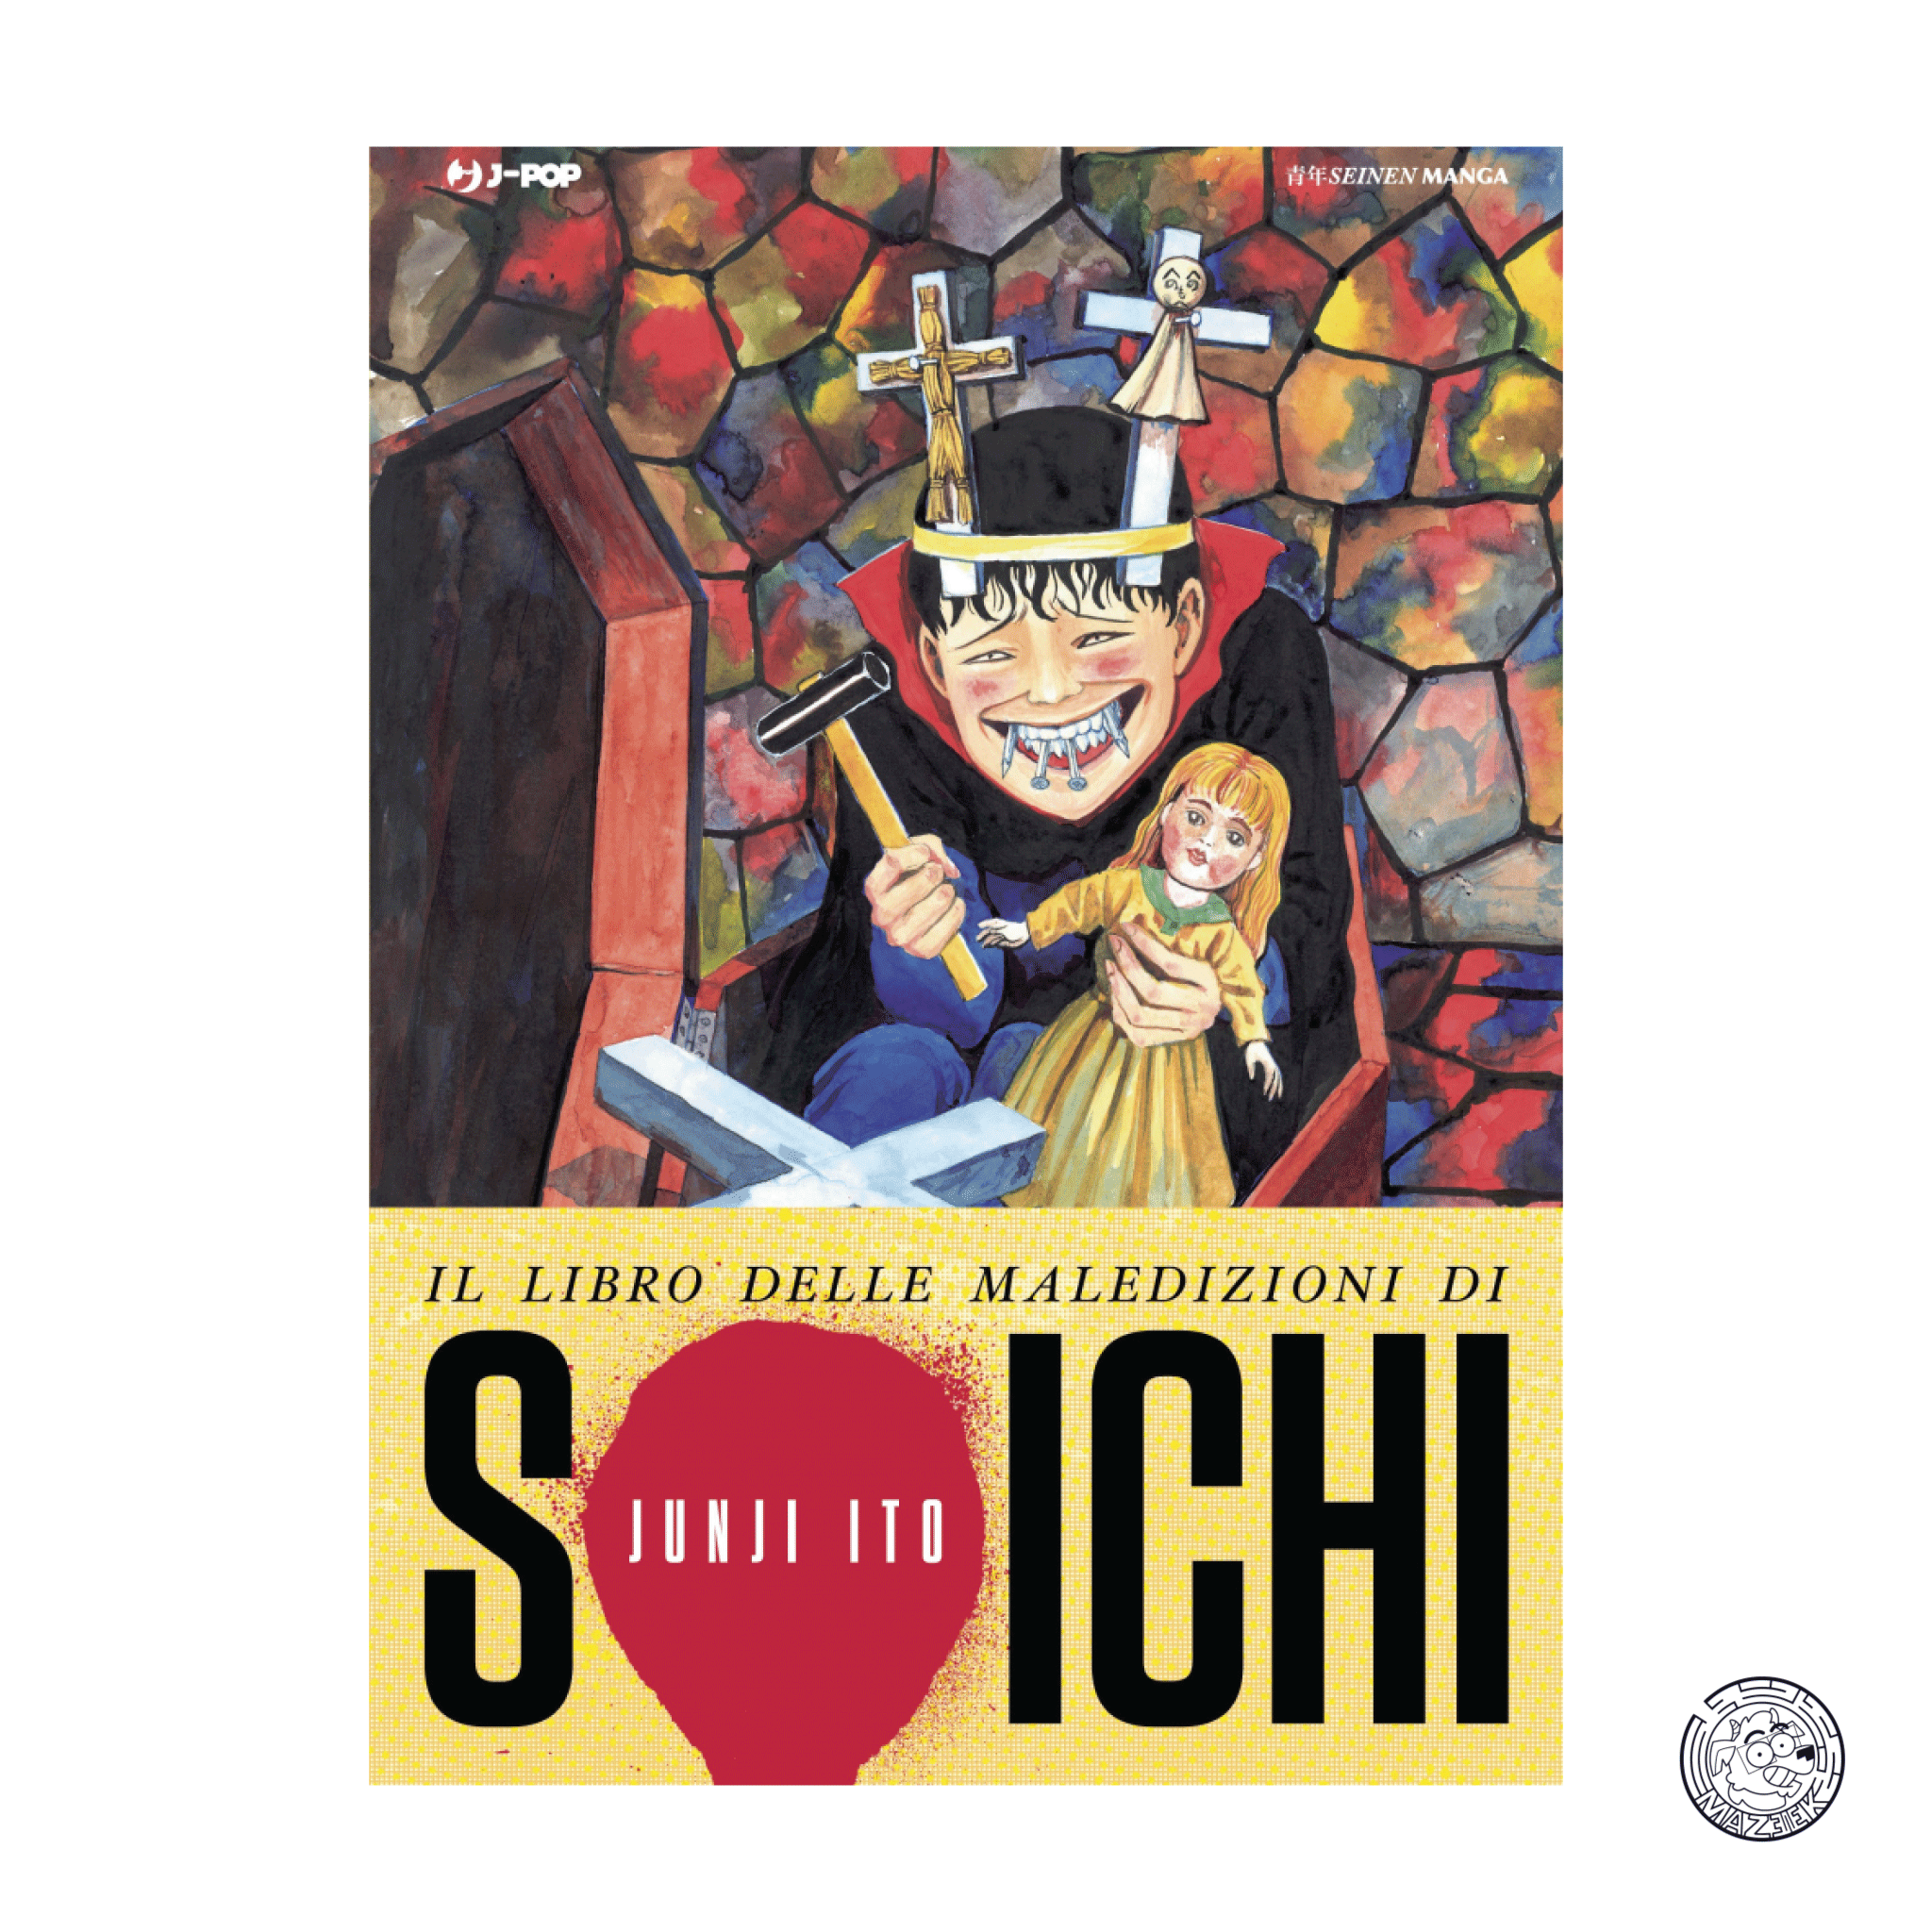 Soichi's Book of Curses